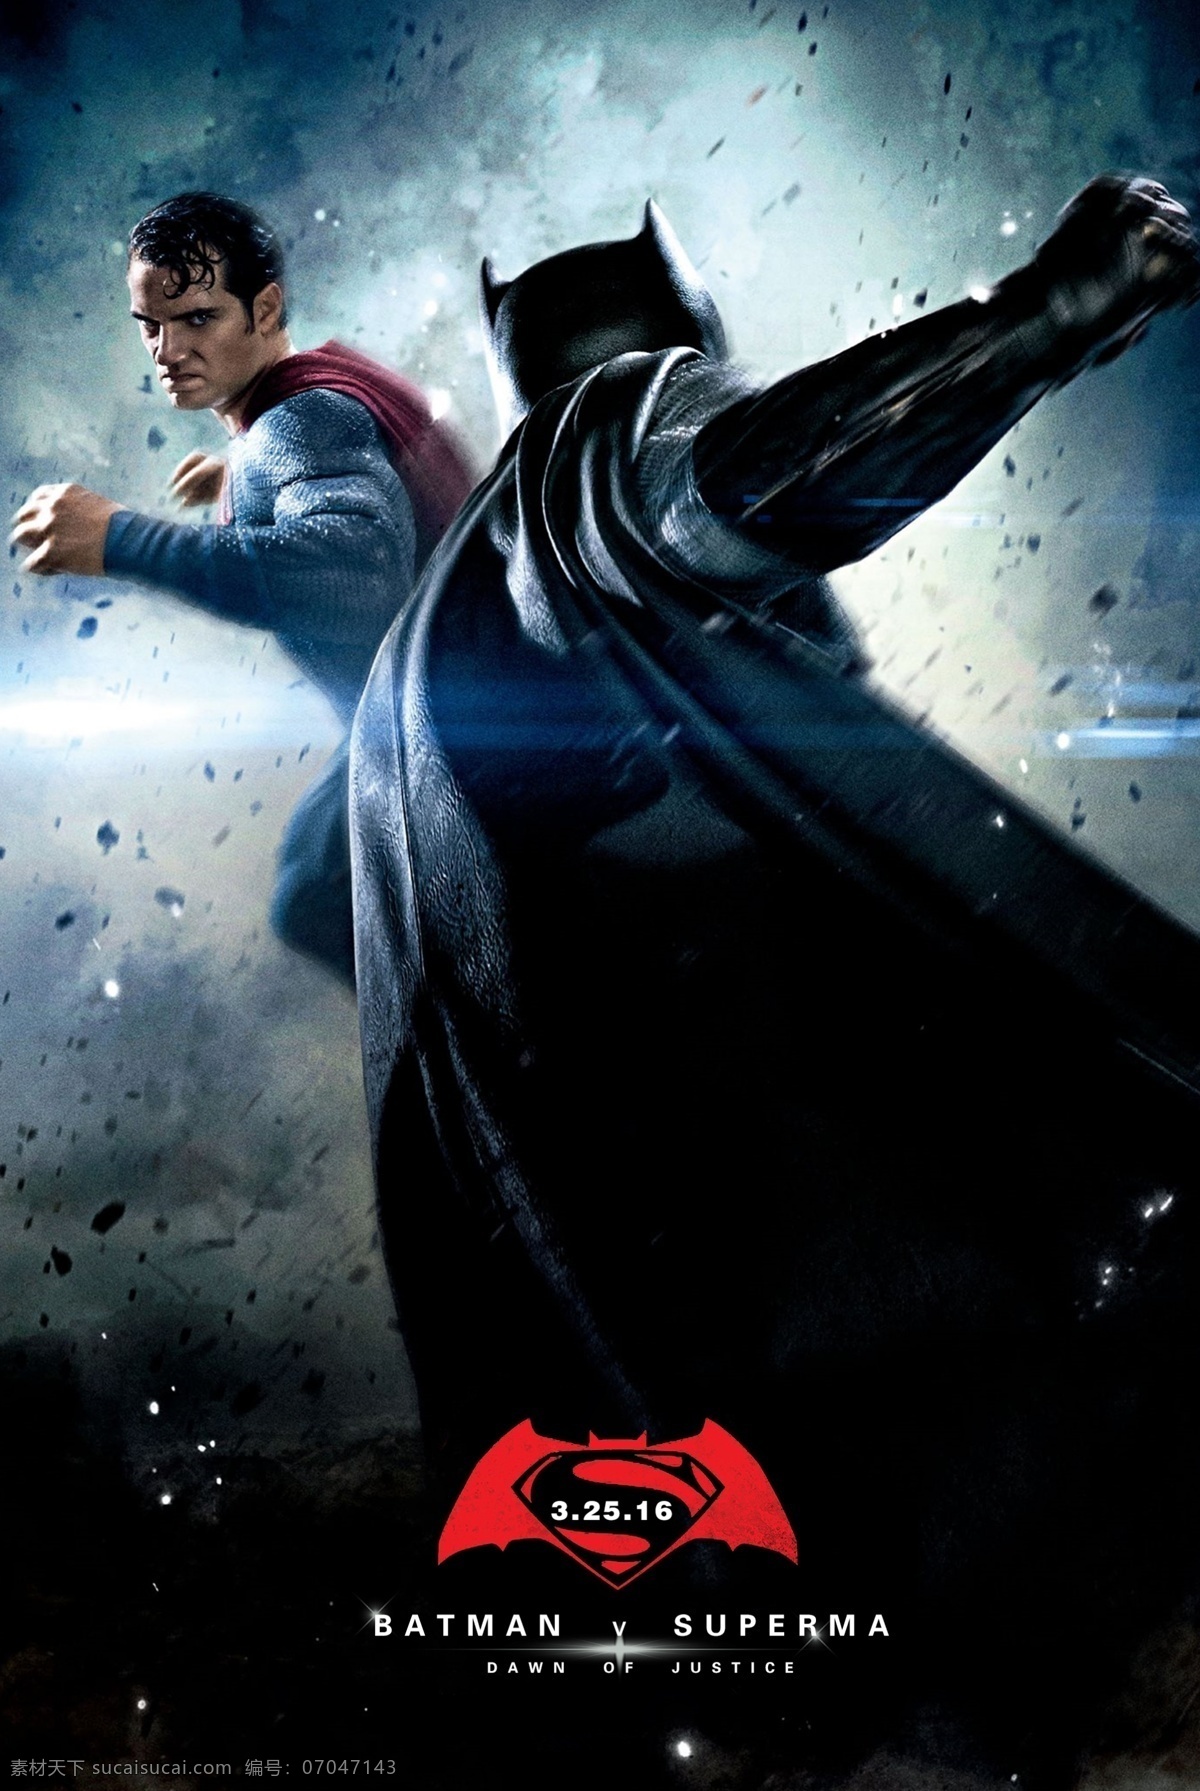 蝙蝠侠 大战 超人 正义曙光 正义黎明 阿弗莱克 亨利 卡维尔 电影 电影海报 dcue 文化艺术 影视娱乐